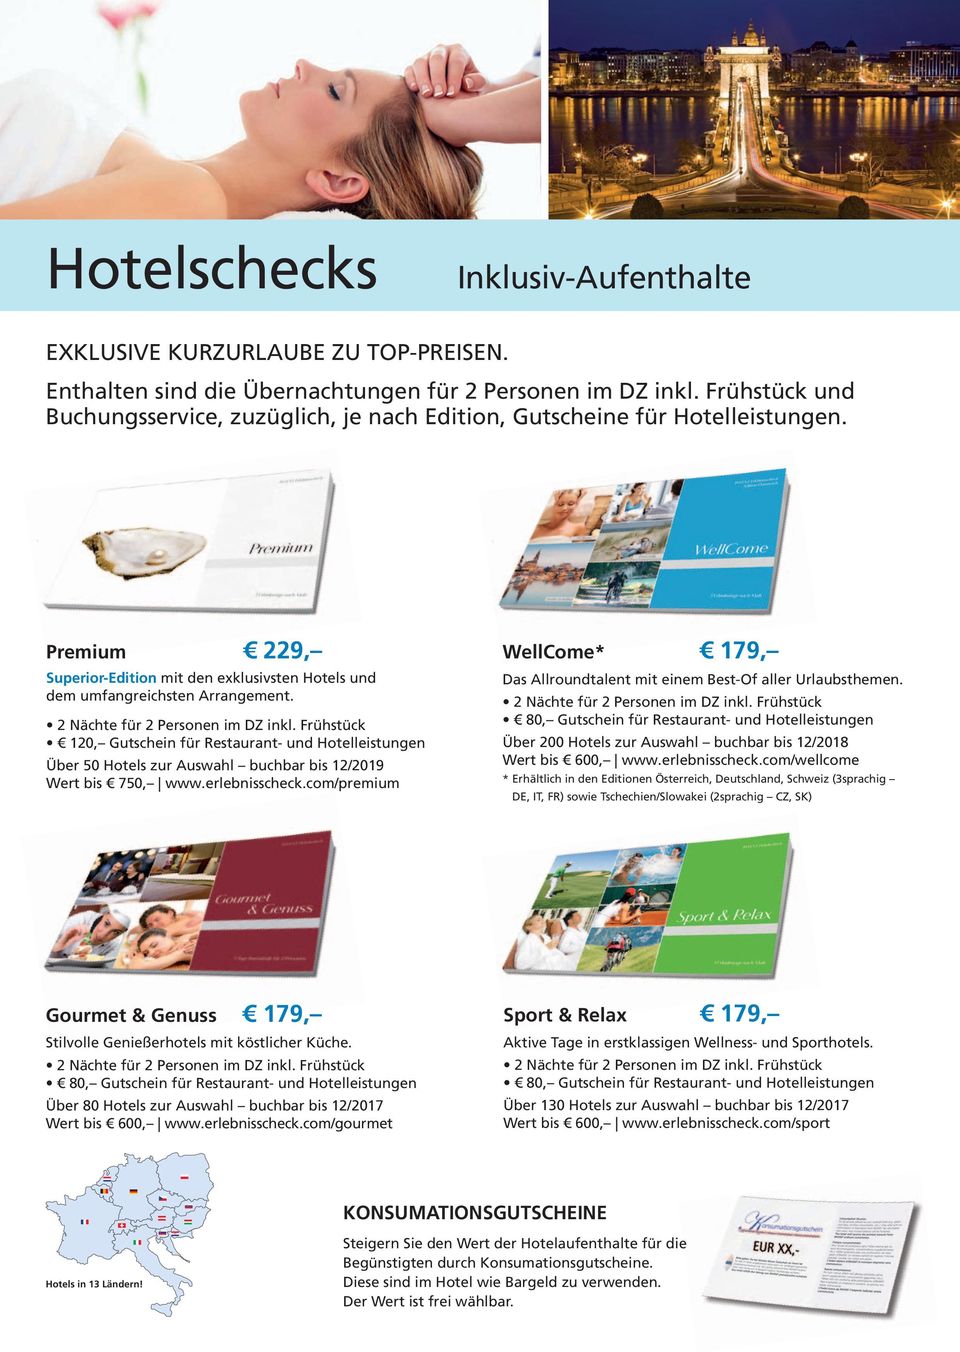 120, Gutschein für Restaurant- und Hotelleistungen Über 50 Hotels zur Auswahl buchbar bis 12/2019 Wert bis 750, www.erlebnisscheck.